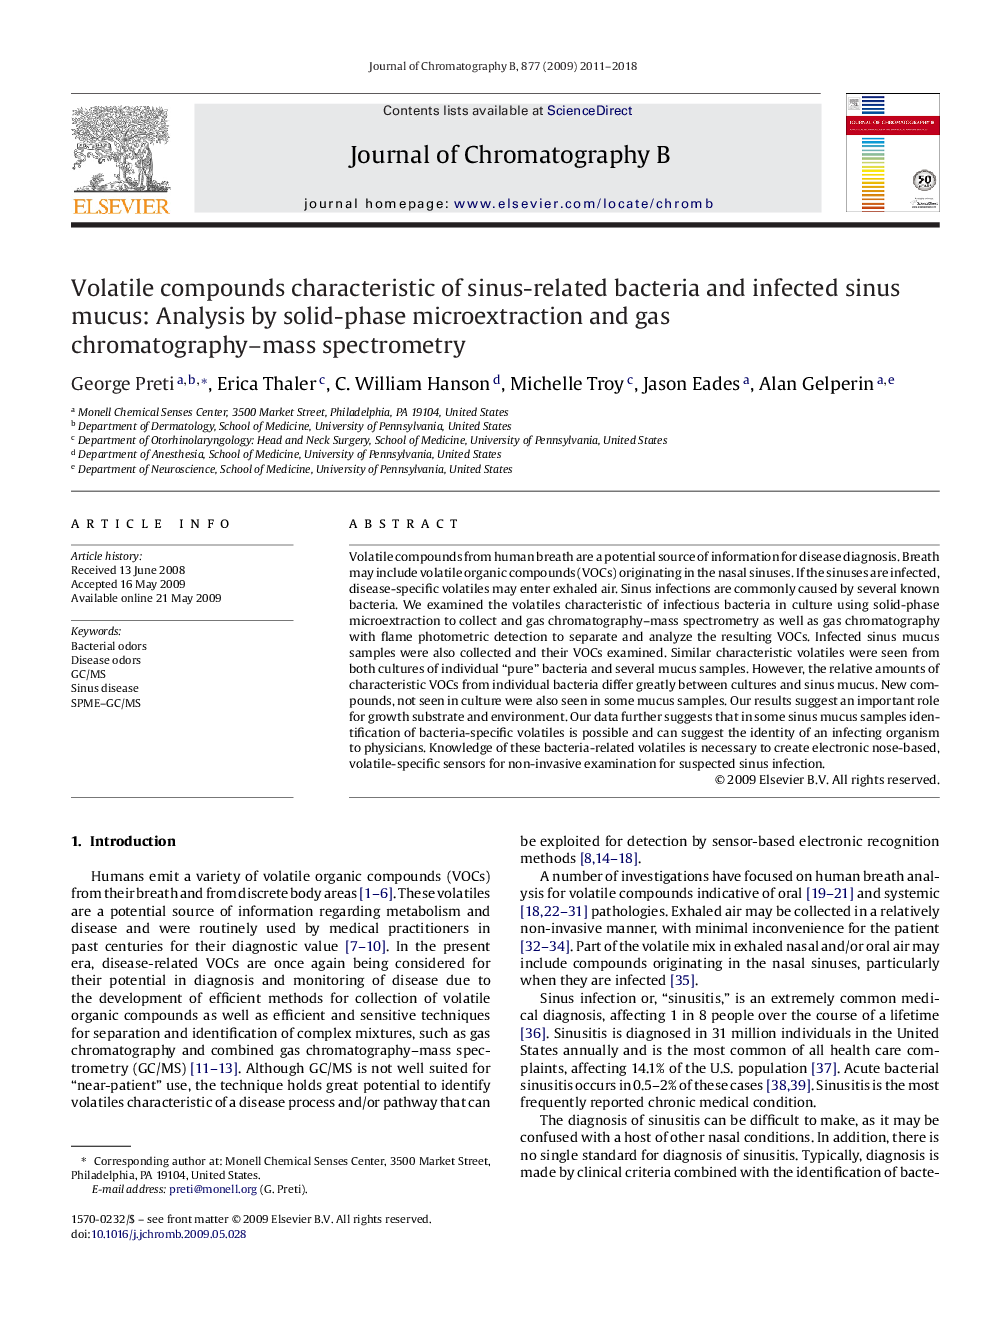 ترکیبات فرار از ویژگی های باکتری های مرتبط با سینوس و مخاط مخاطی سینوسی: تجزیه و تحلیل توسط میکرو اکستراکتازی جامد فاز و طیف سنج جرمی کروماتوگرافی گاز